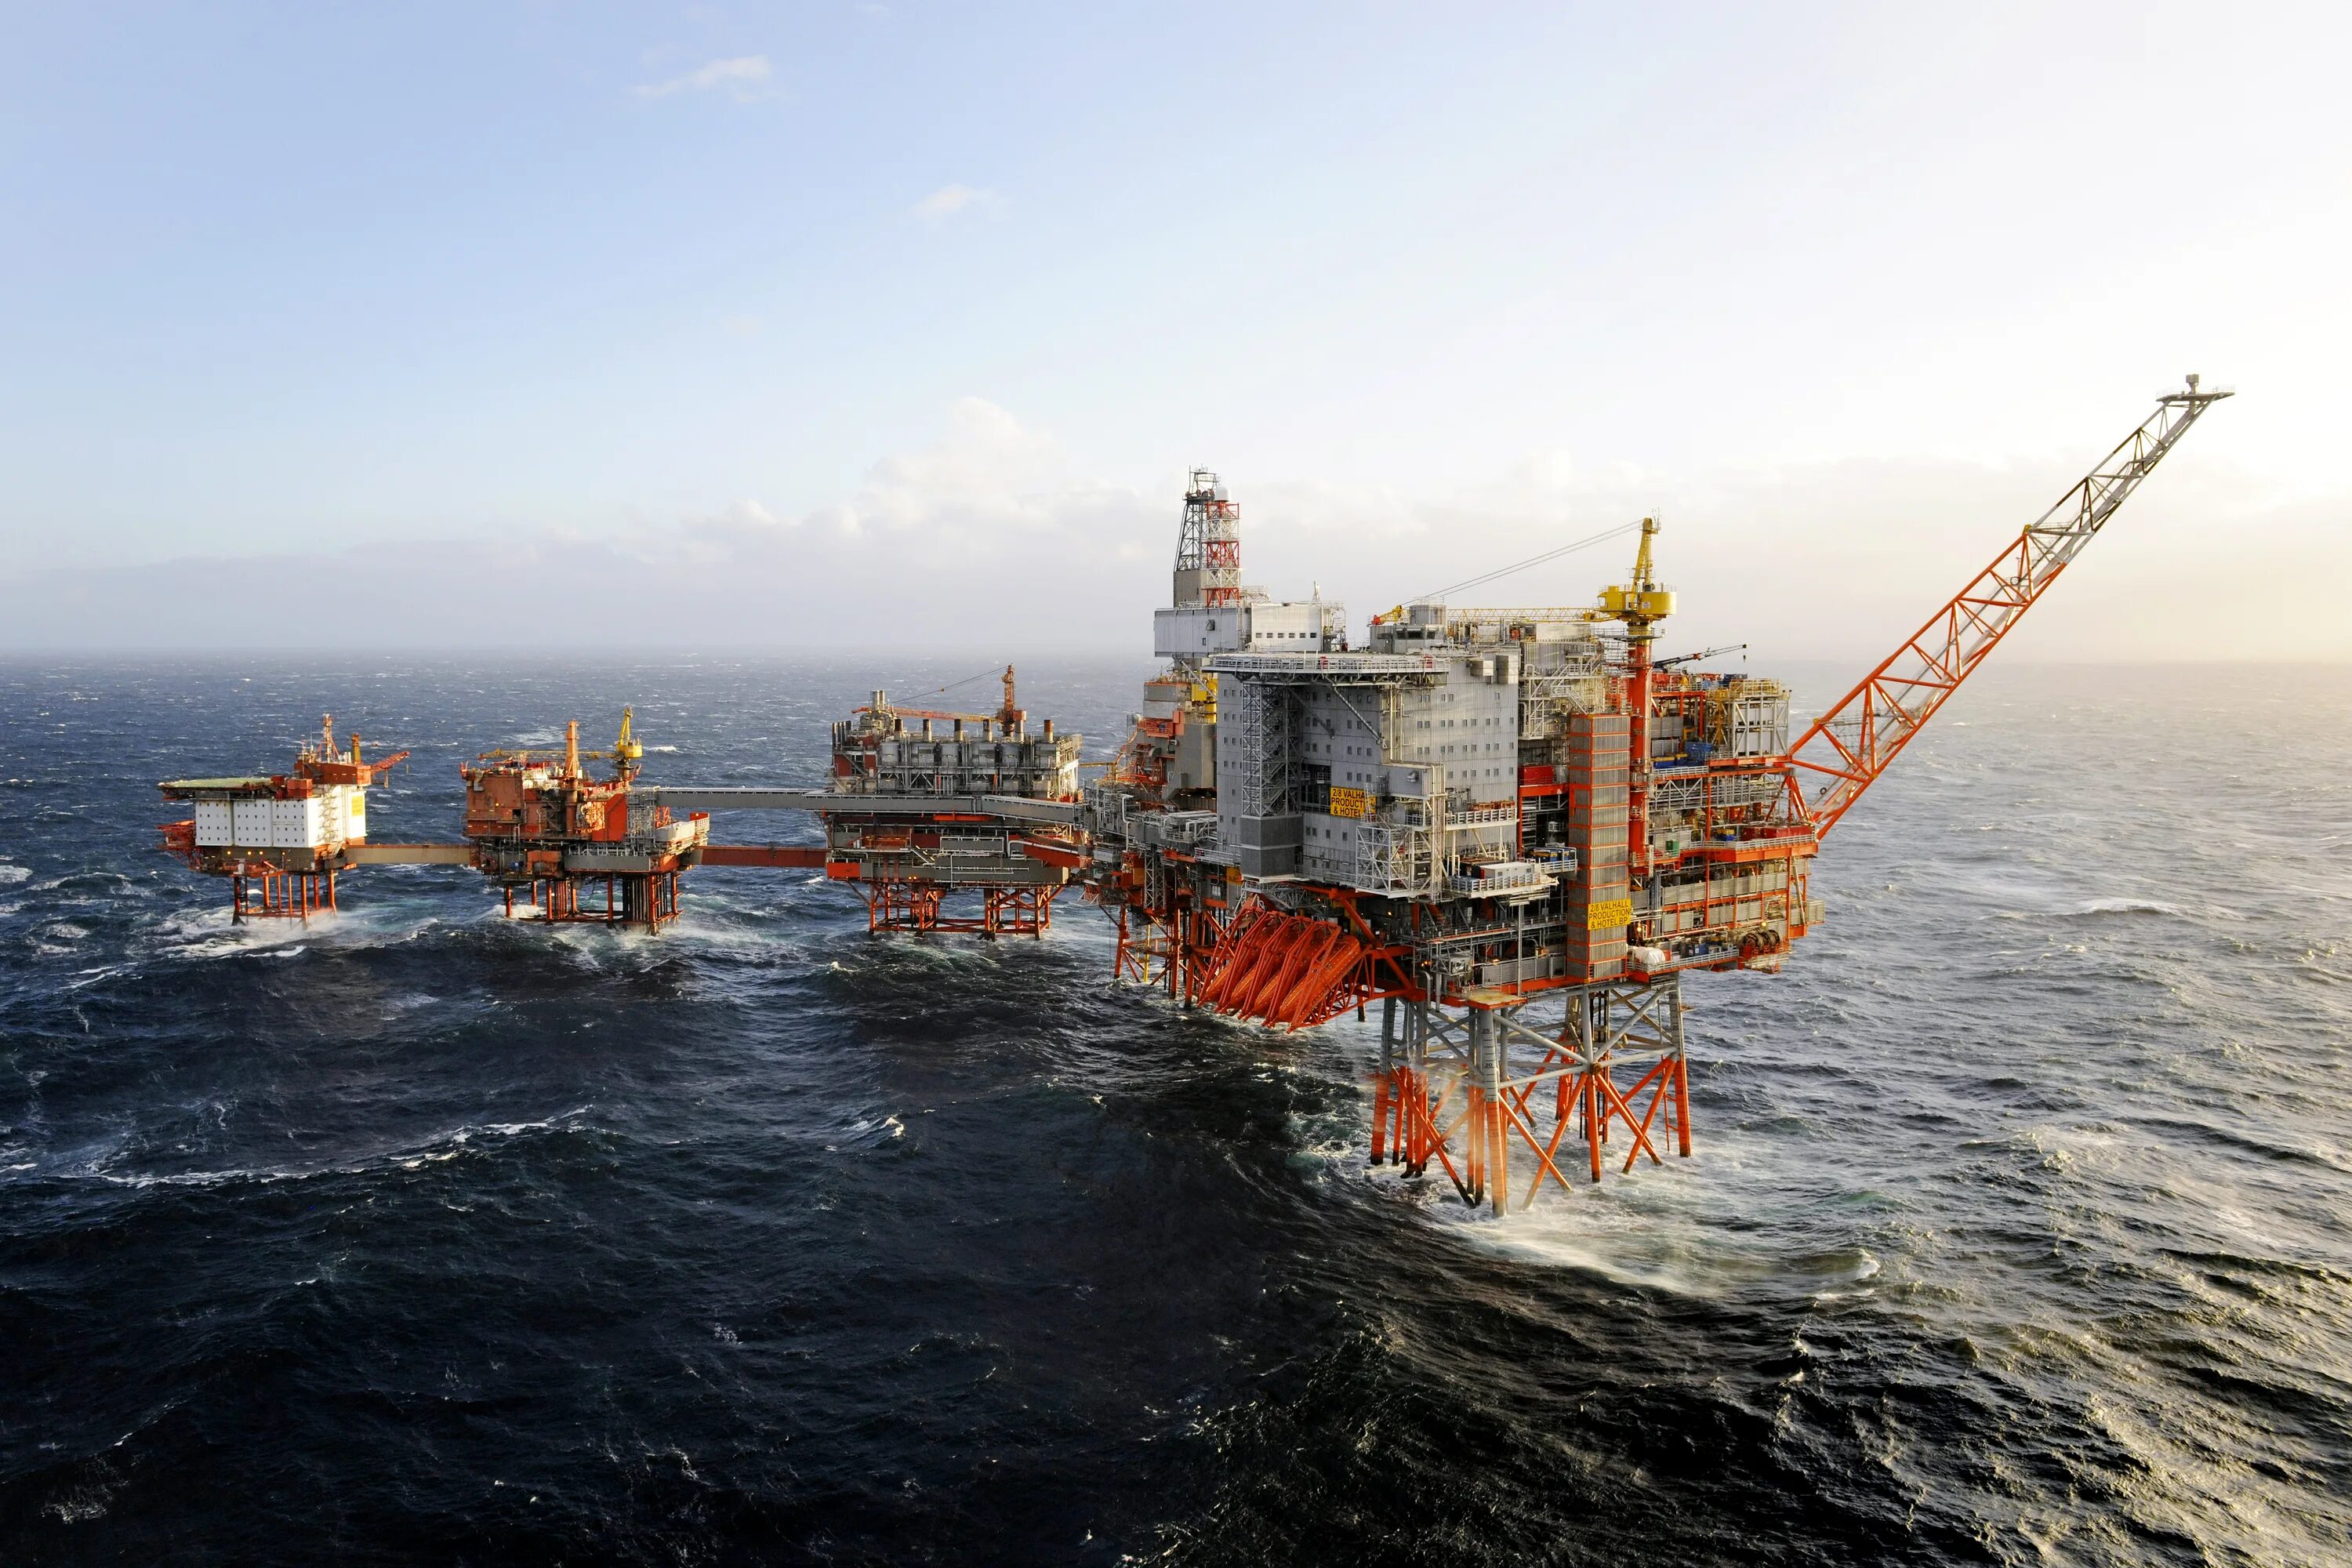 Платформа добычи. Нефтяная платформа "Дропнер" 1995. Хайберния нефтяная платформа. Нефтедобыча в Северном море. Баренцево море нефтедобыча.